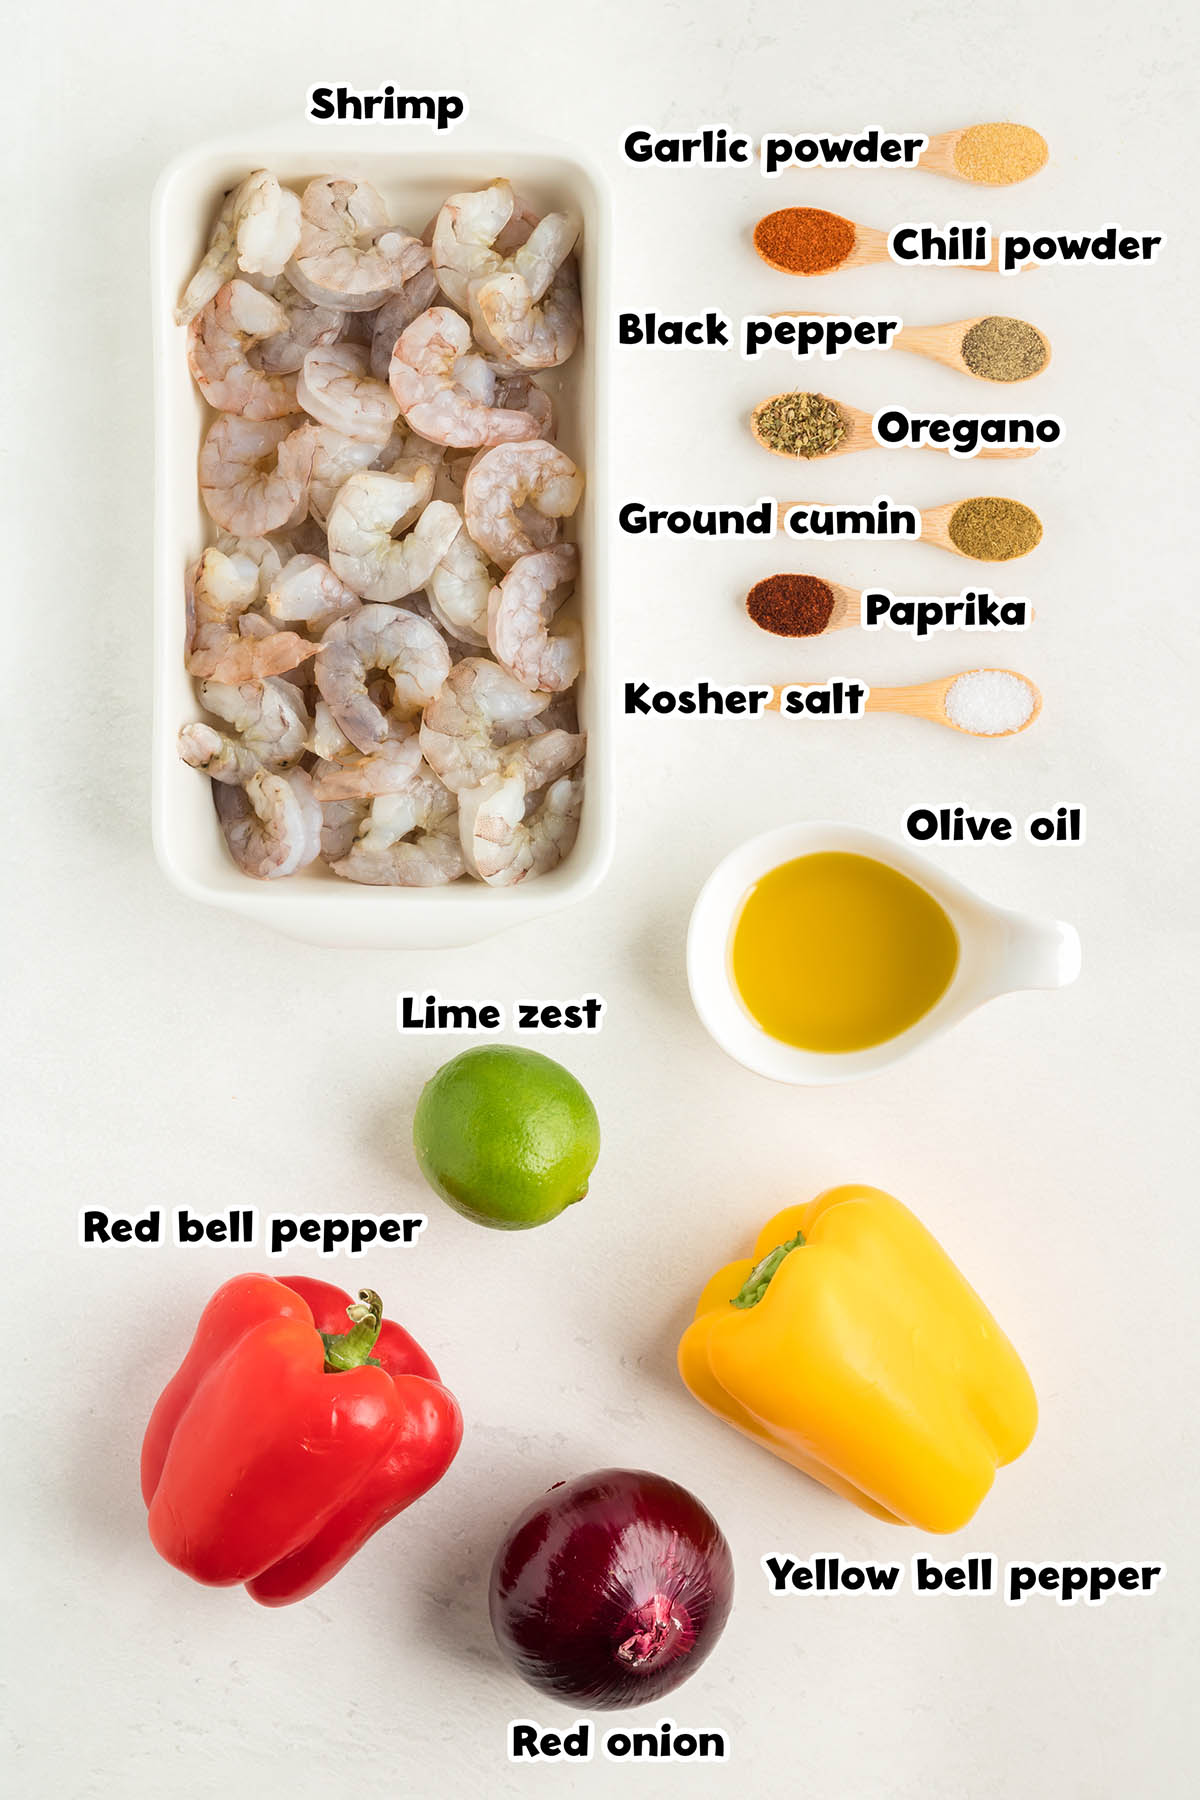 Sheet Pan Shrimp Fajitas ingredients.